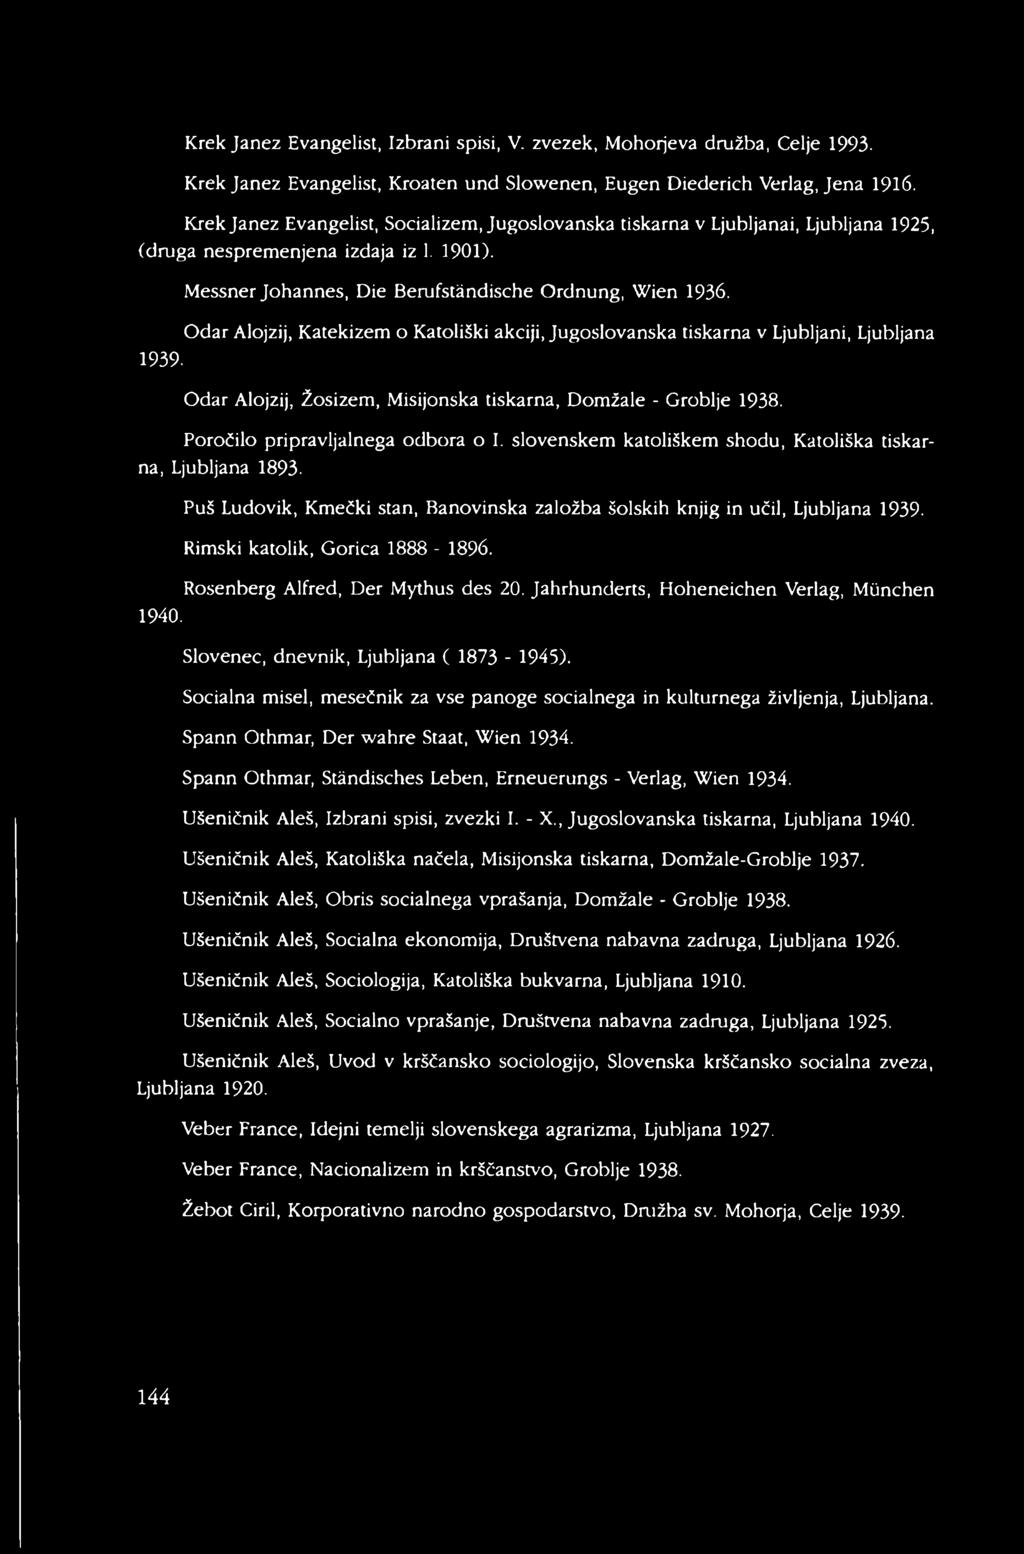 Odar Alojzij, Katekizem o Katoliški akciji, Jugoslovanska tiskarna v Ljubljani, Ljubljana Odar Alojzij, Žosizem, Misijonska tiskarna, Domžale - Groblje 1938. Poročilo pripravljalnega odbora o I.